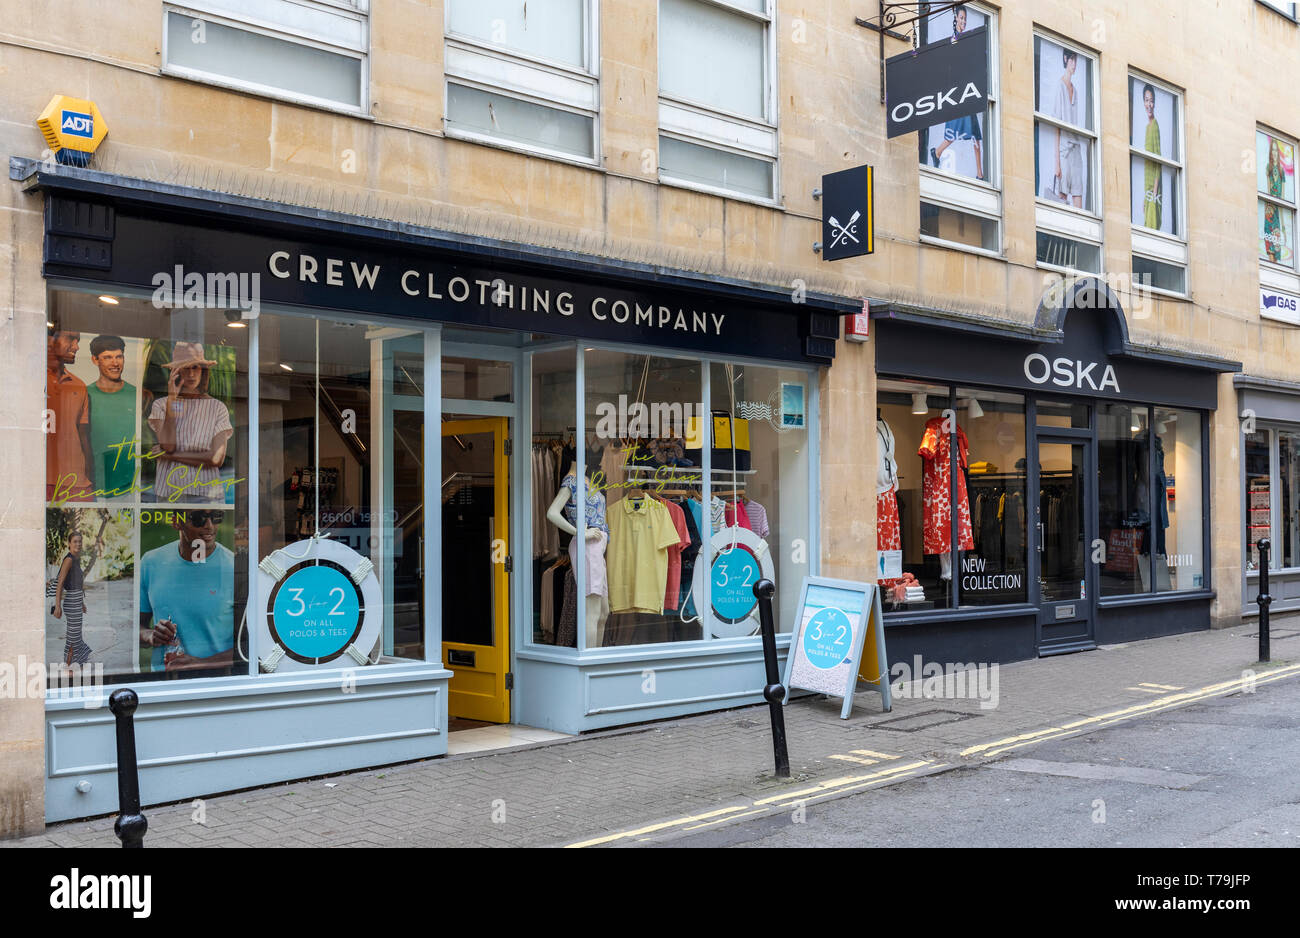 Les magasins de la compagnie de vêtements pour l'équipage et d'Oska dans les murs du Borough supérieur, Bath, Angleterre, Royaume-Uni Banque D'Images